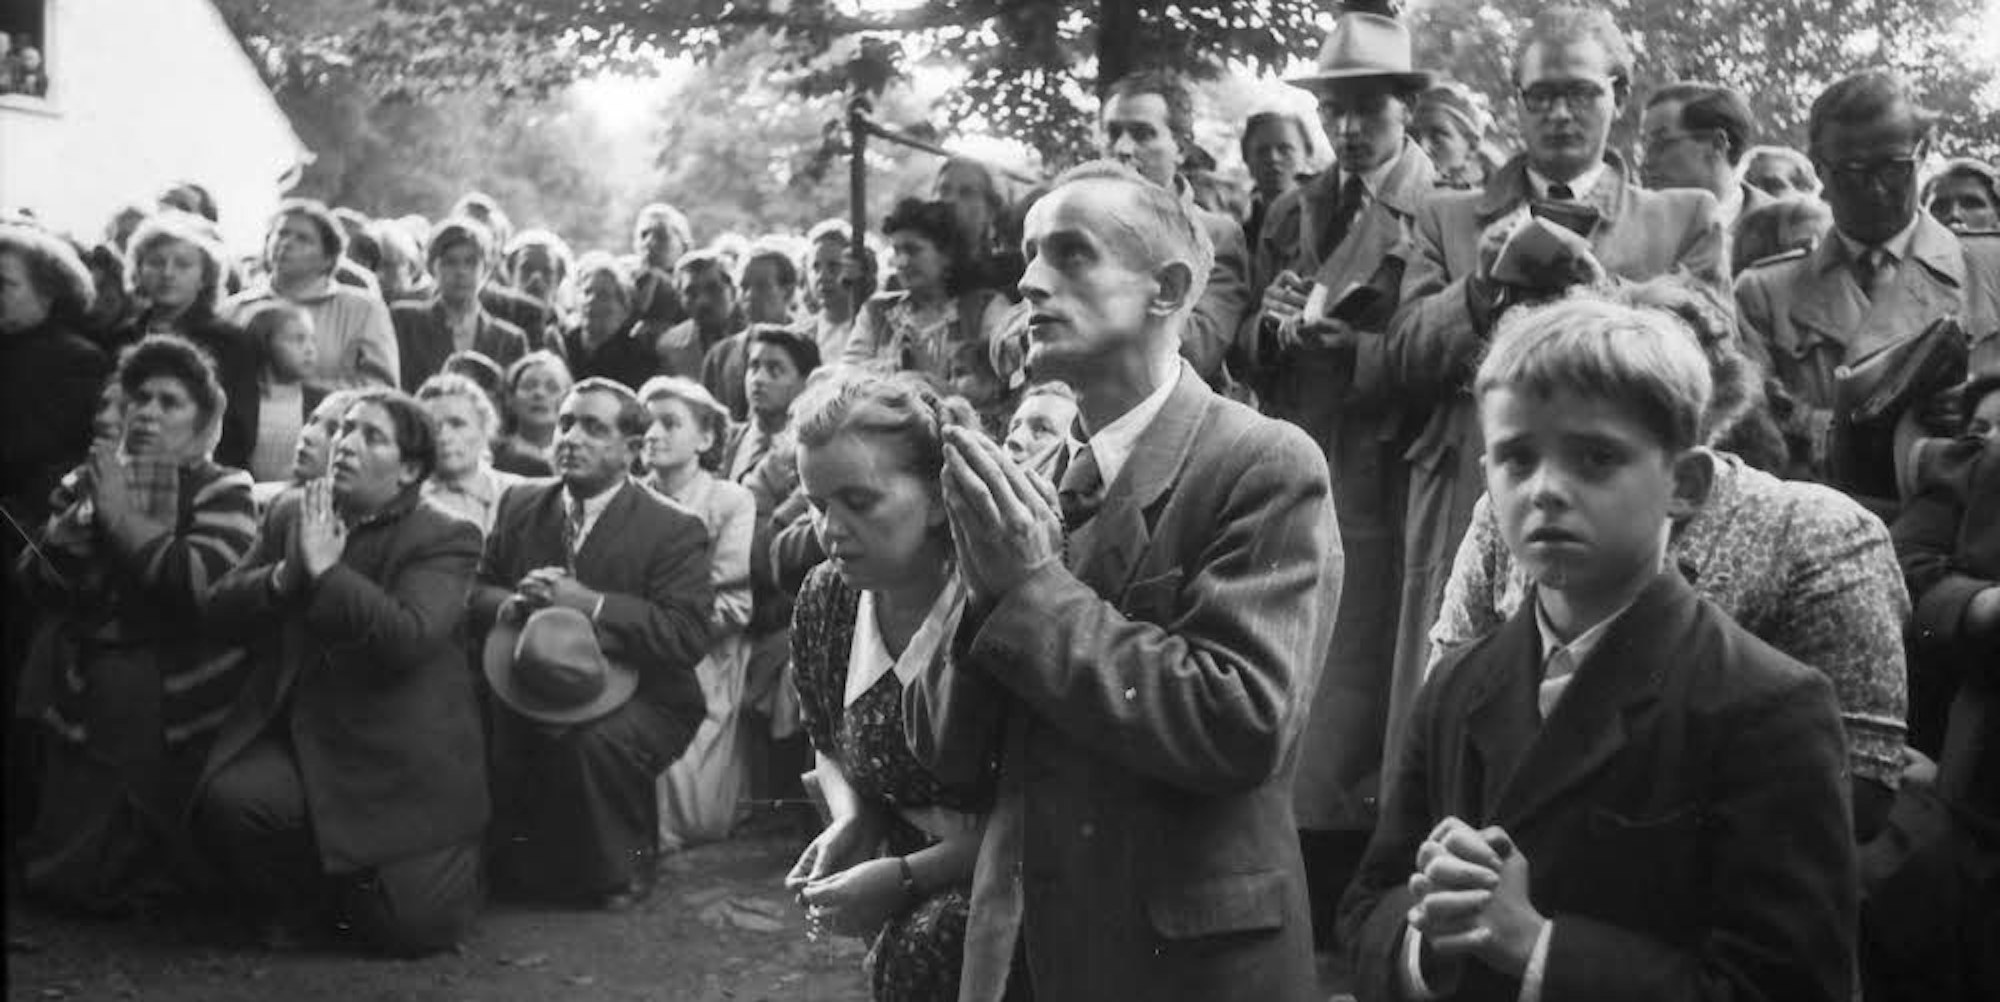 Mehrere Tausend Menschen pilgerten am 8. September 1952 nach Niederhabbach und erwarteten die Marienerscheinung, die Karl Ziganke für diesen Tag vorhergesagt hatte.